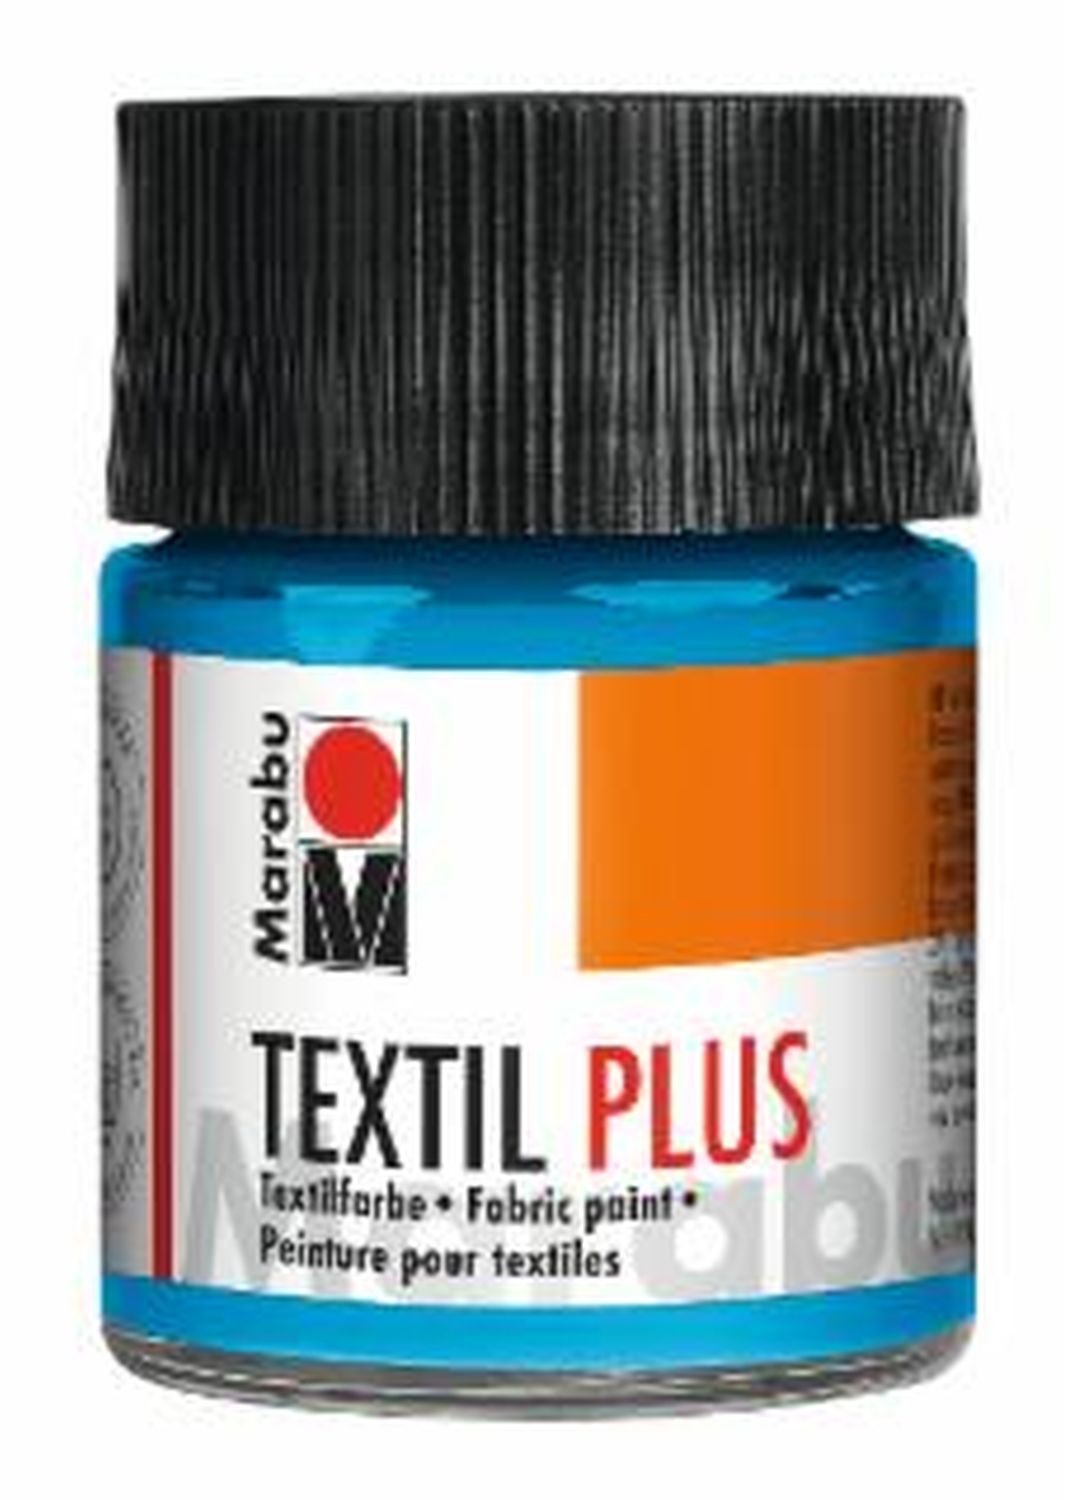 Textil plus - Hellblau 090, 50 ml